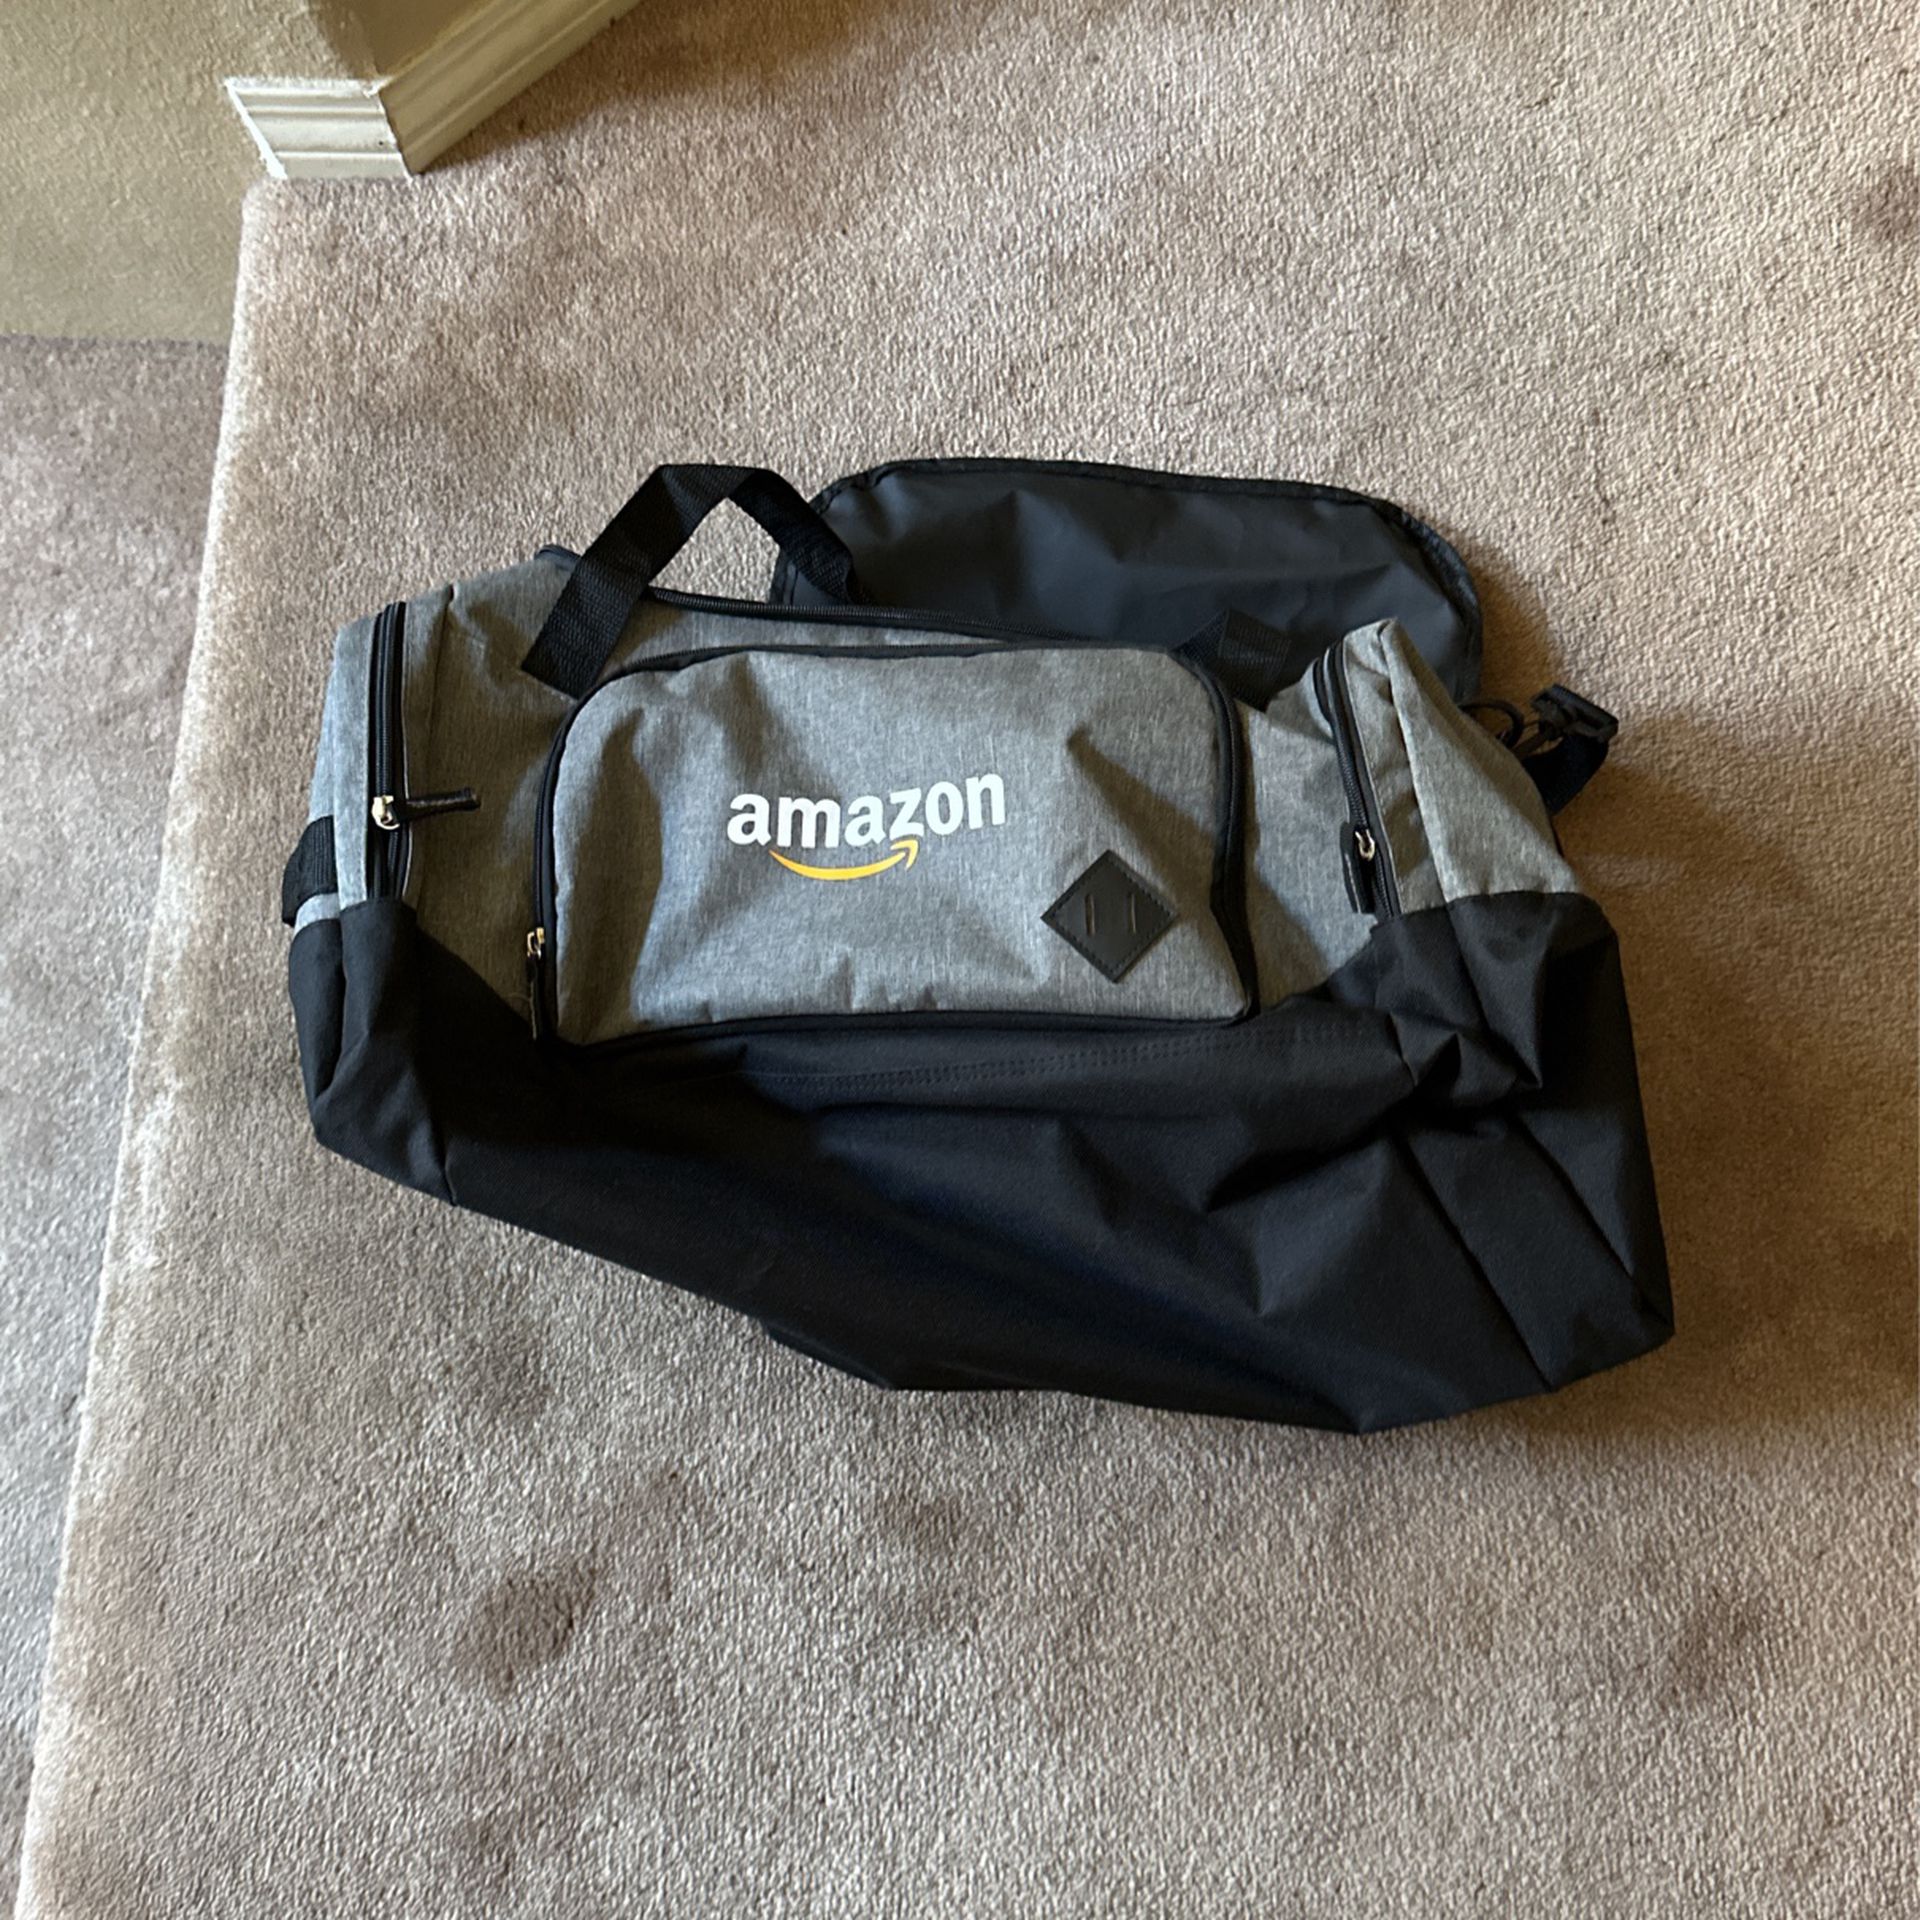 Brand New Amazon Duffle Bag